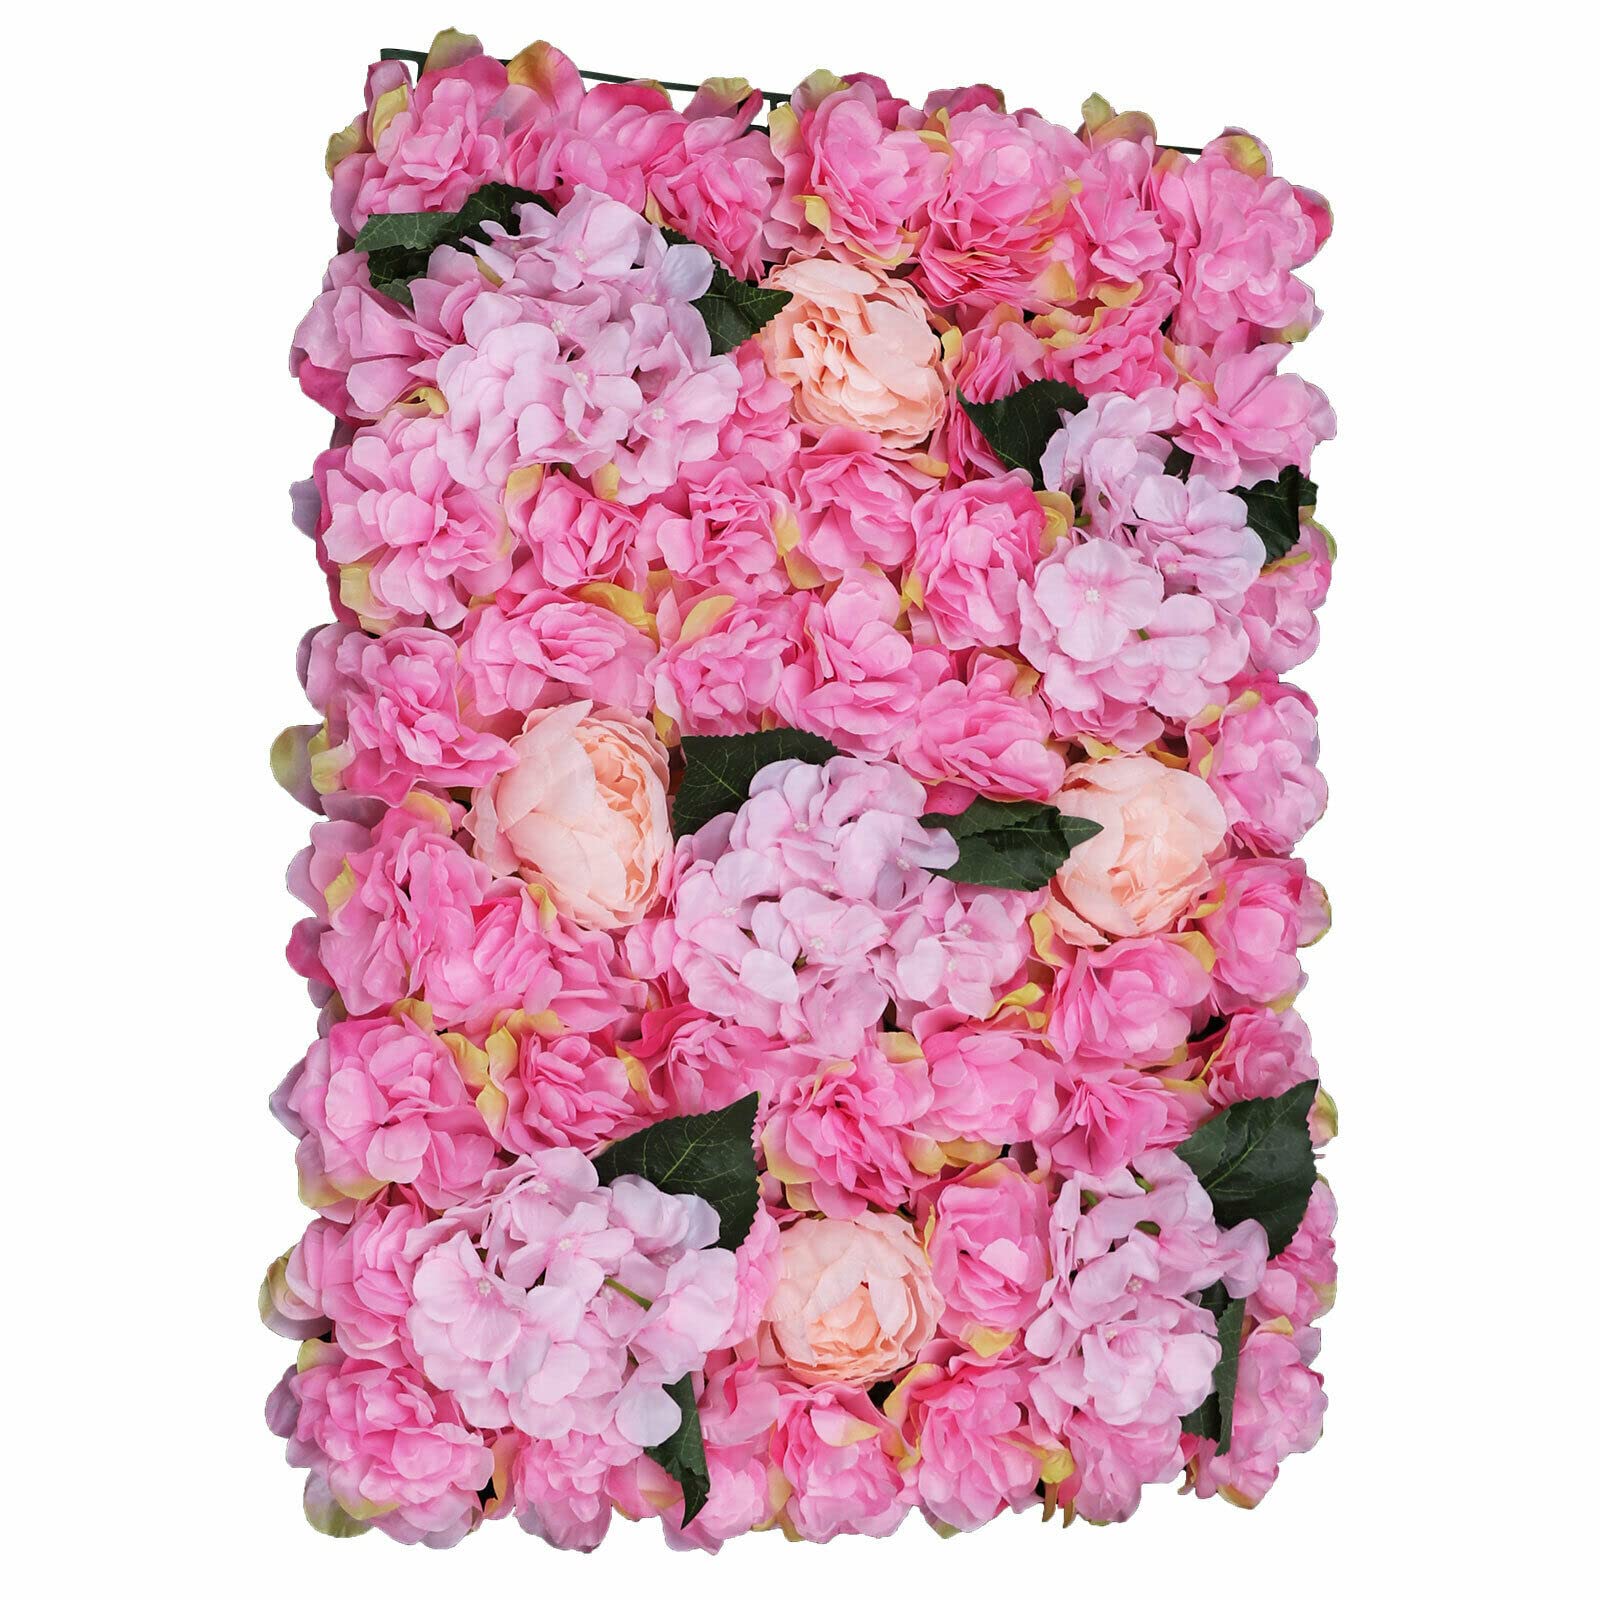  Colonna di fiori artificiali da parete, 6 pezzi, decorazione fai da te, per giardino, matrimonio, 40 x 60 cm